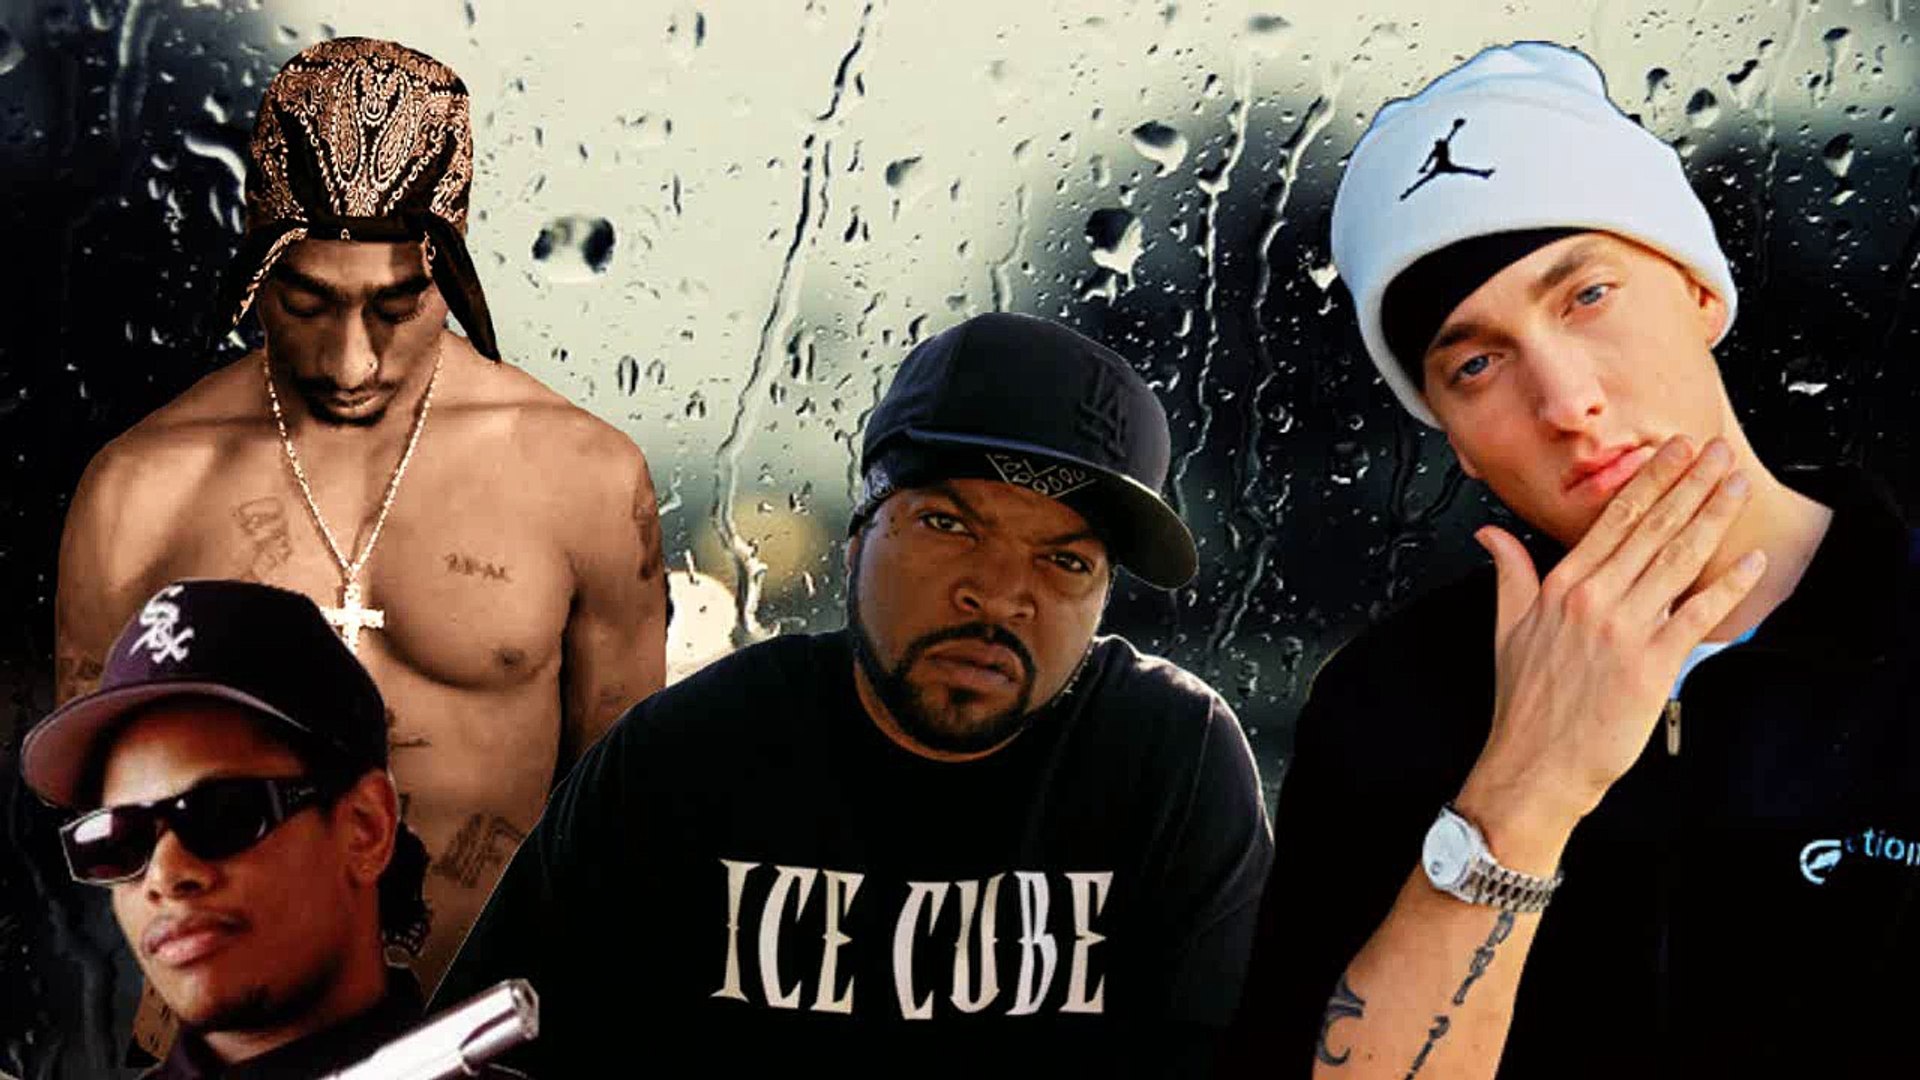 Ice cube ft eminem. Ice Cube 2pac Eazy e. Eazy-e и Эминем. Eazy e Riot. Eazy-e и 2pac.